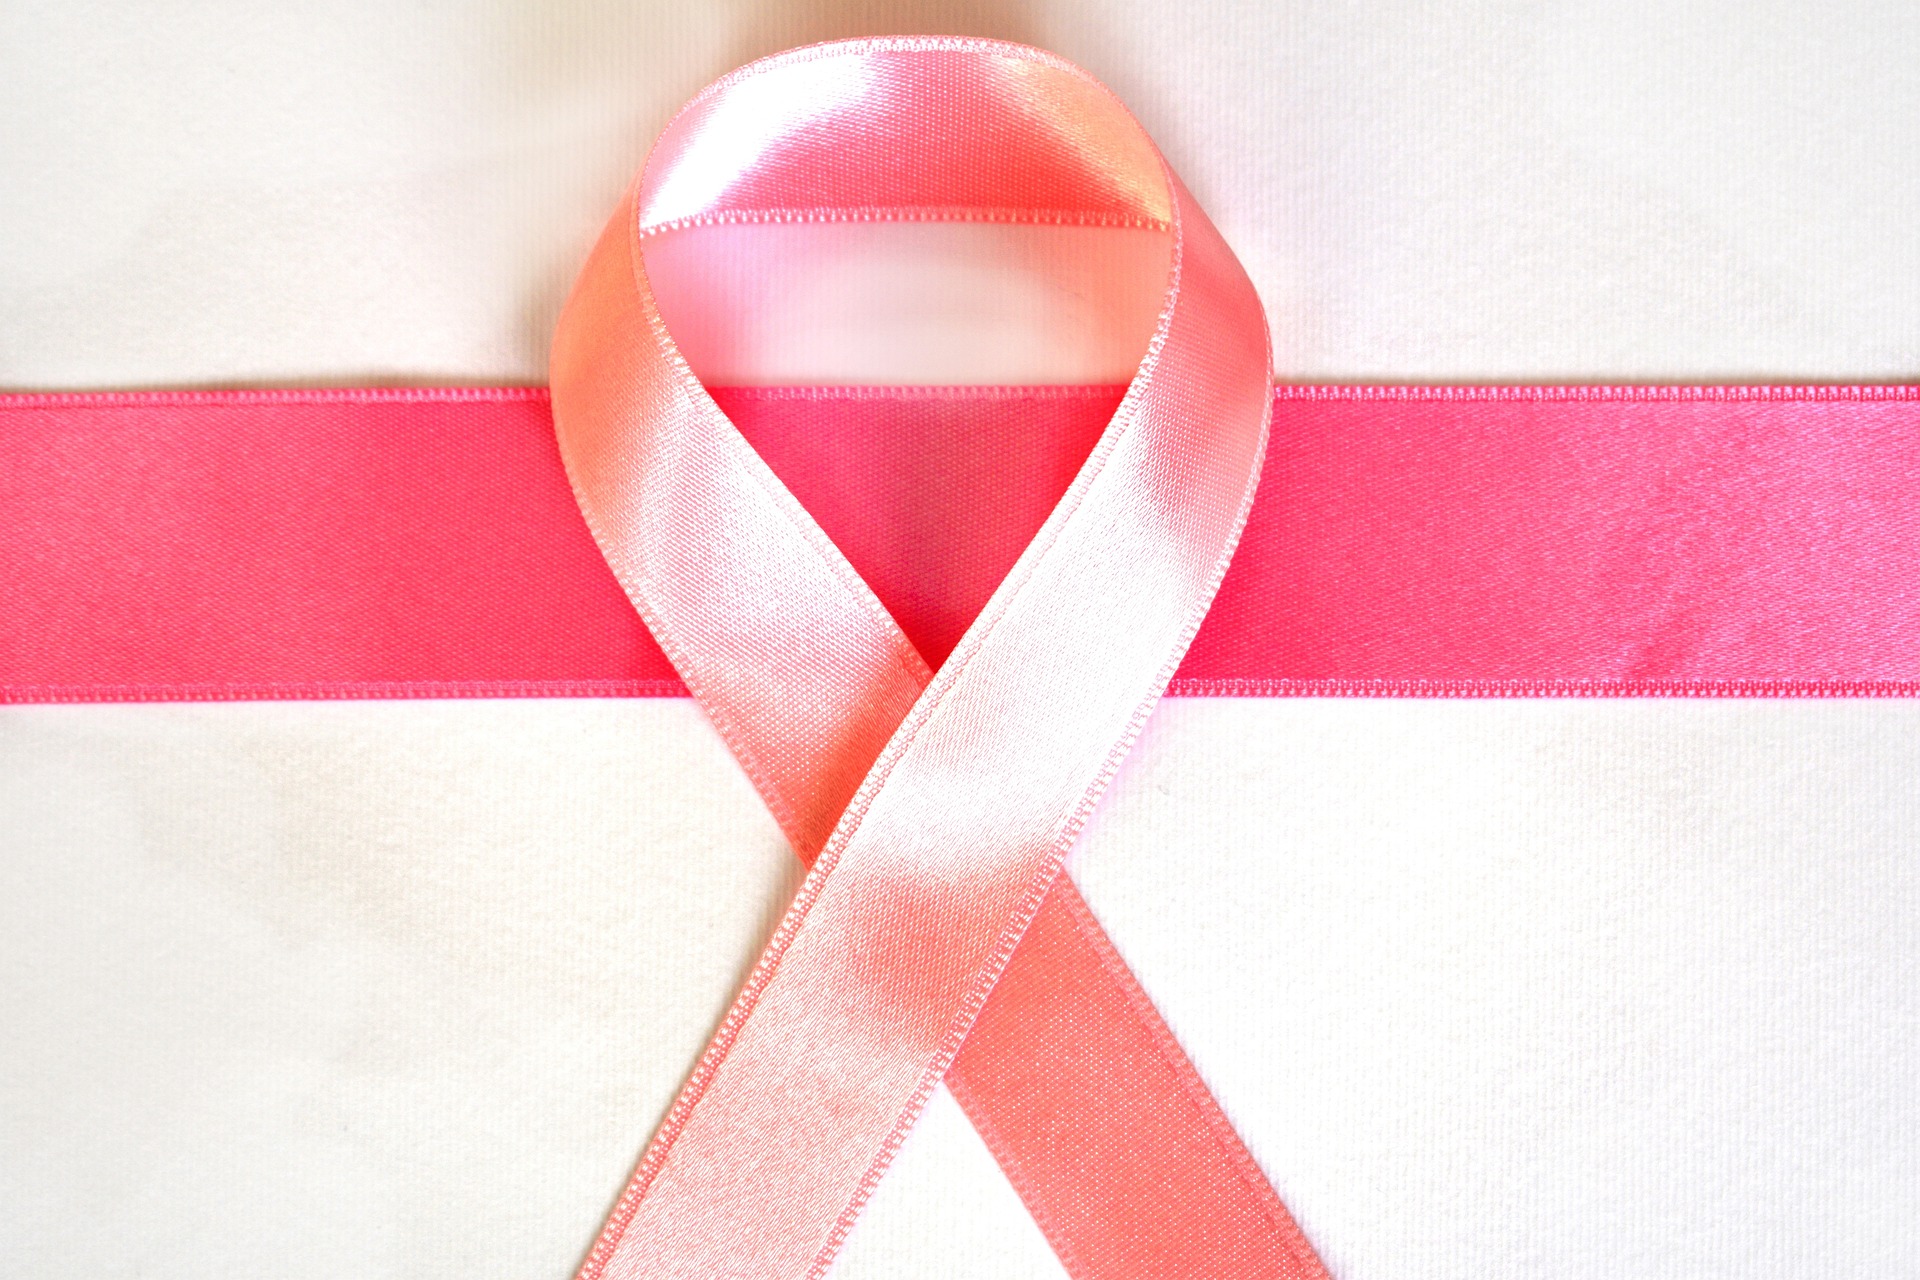 Bezpłatne badania mammograficzne w grudniu